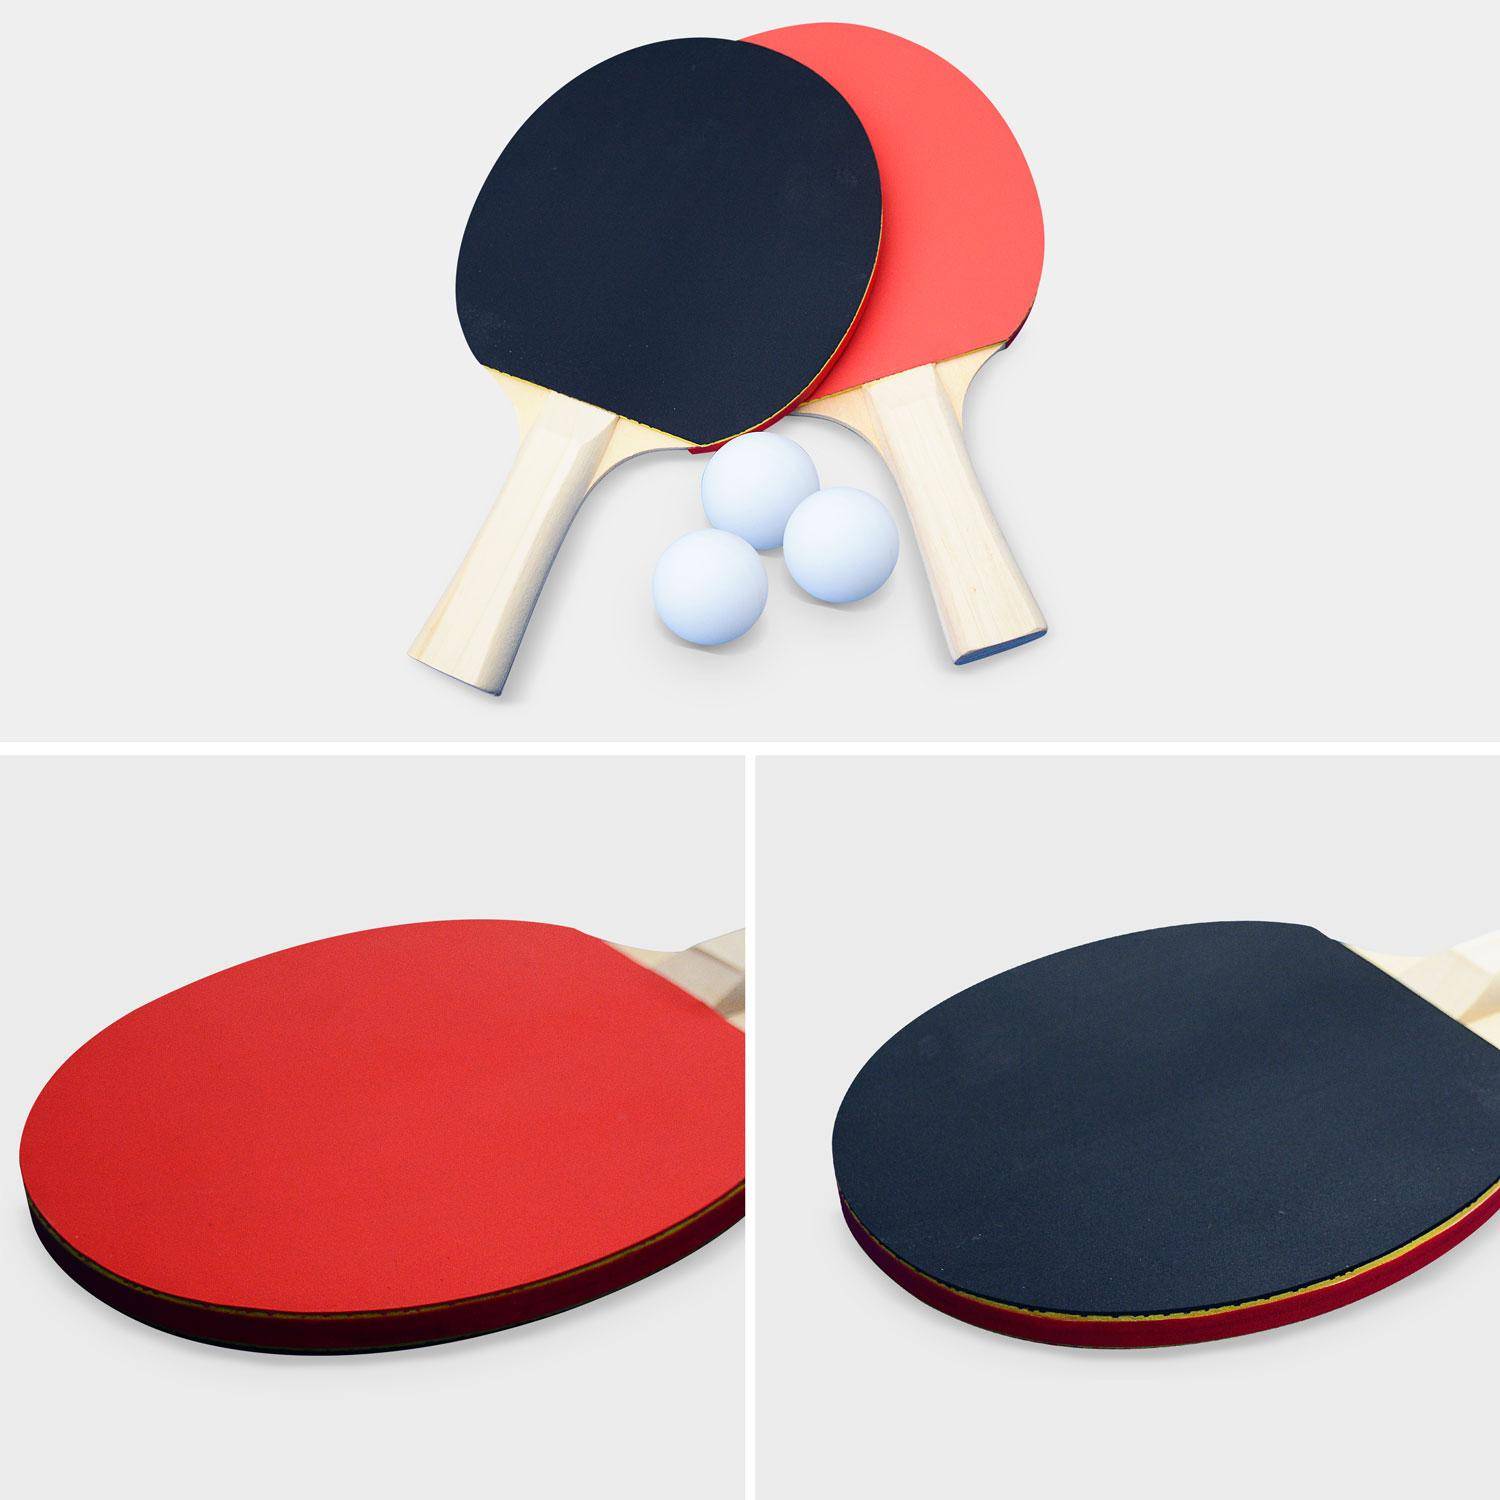 Table de ping pong OUTDOOR bleue - table pliable avec 4 raquettes et 6 balles, pour utilisation extérieure, sport tennis de table Photo8